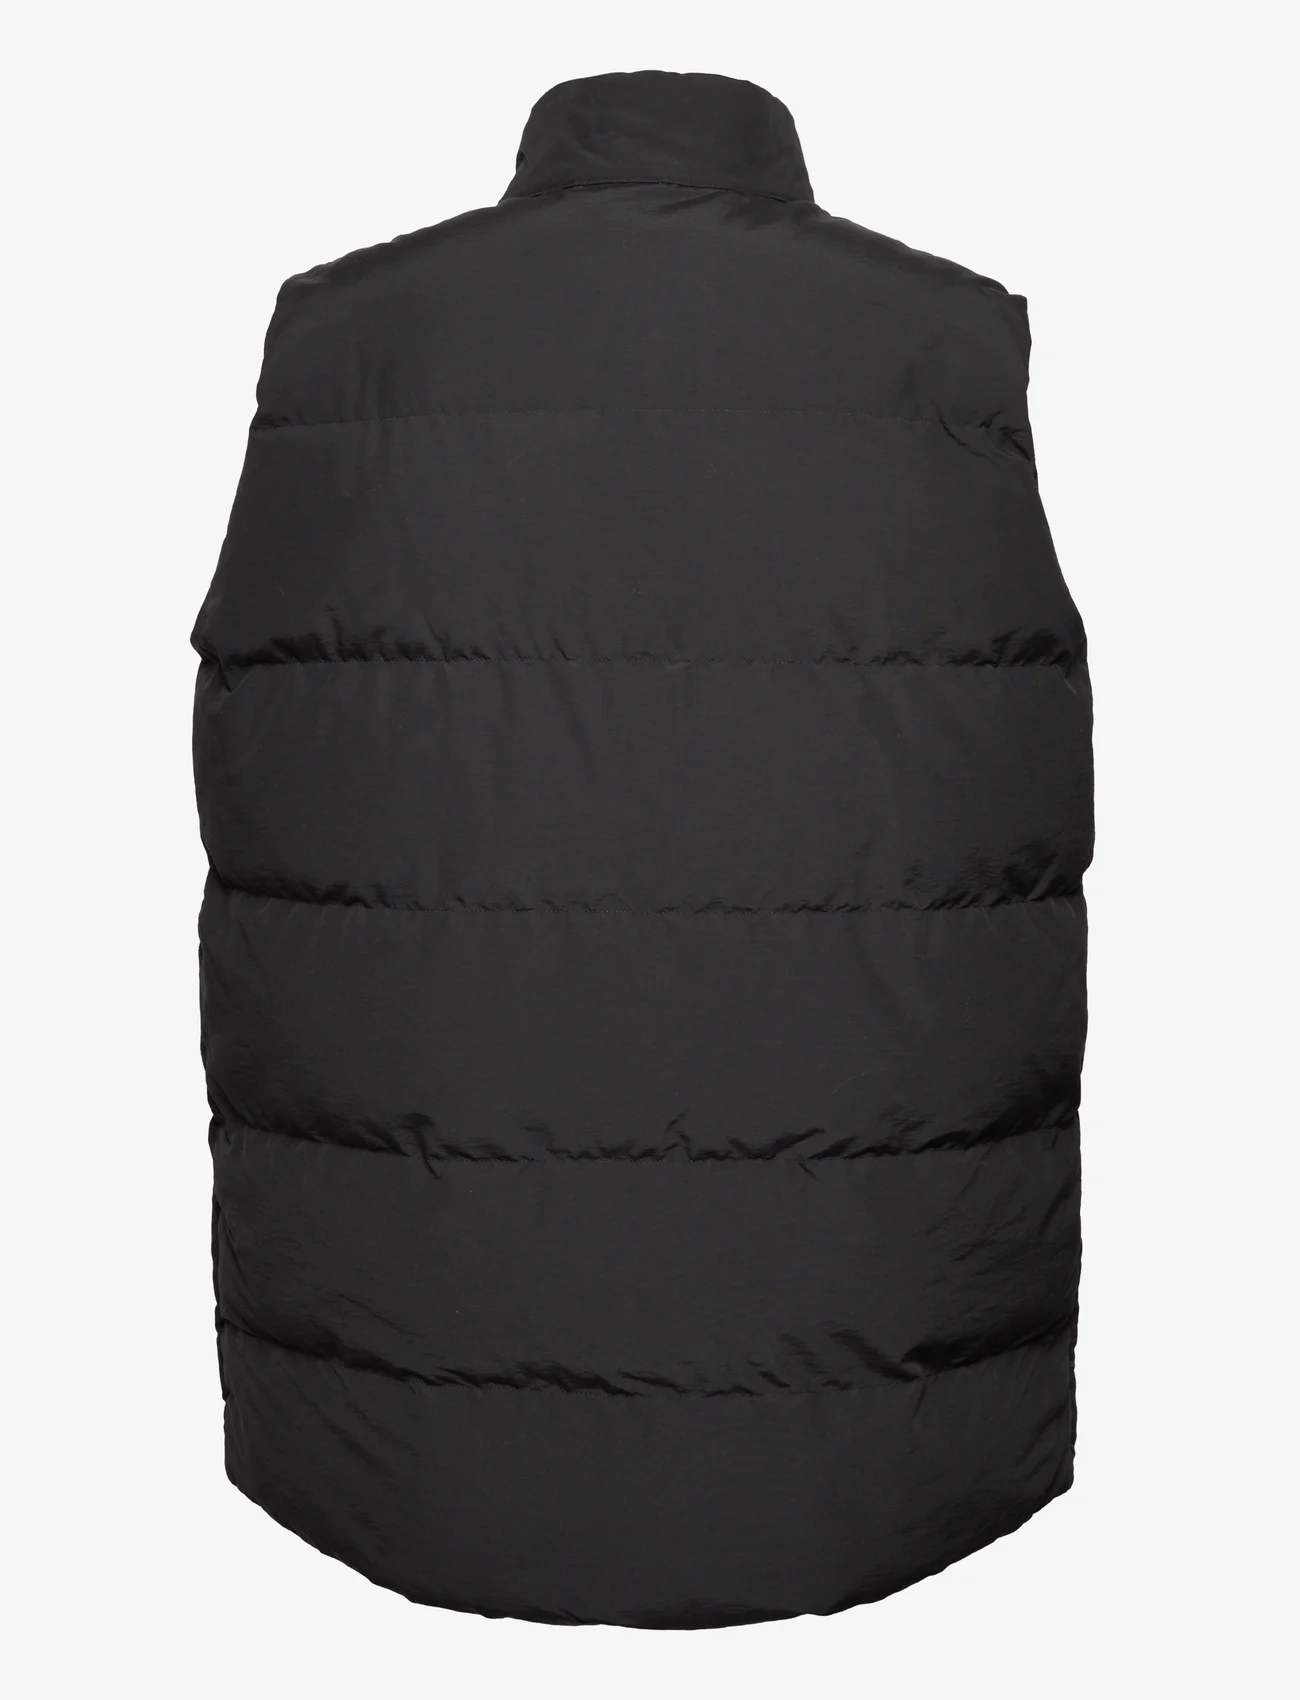 Penfield - Outback Vest - spring jackets - black - 1